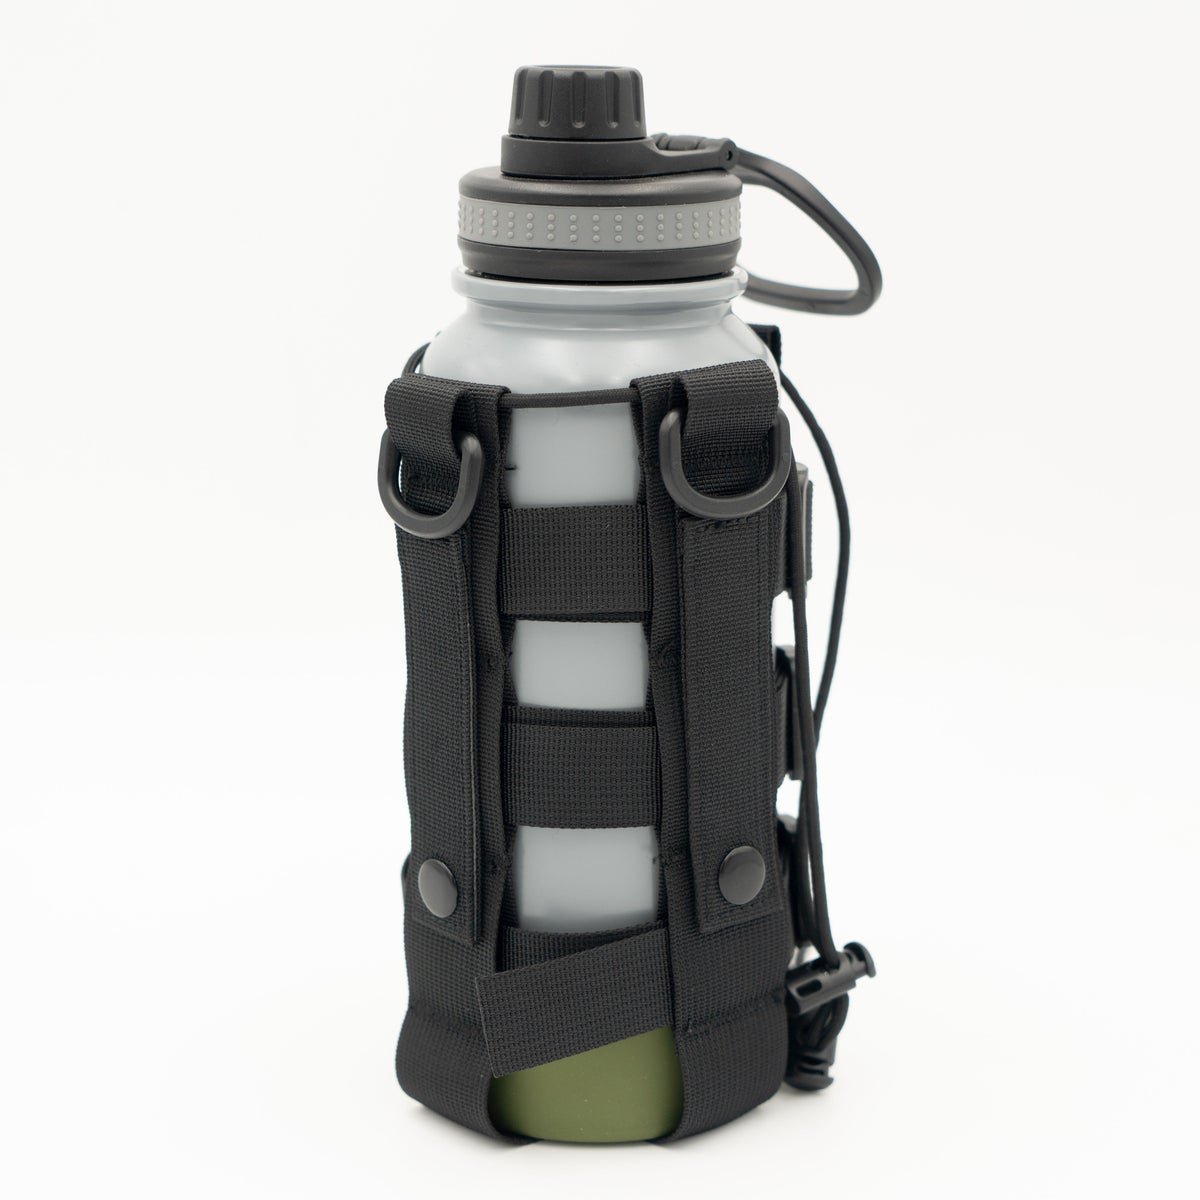 Tuff Stuff Water Bottle Sleeve TS-8-1101